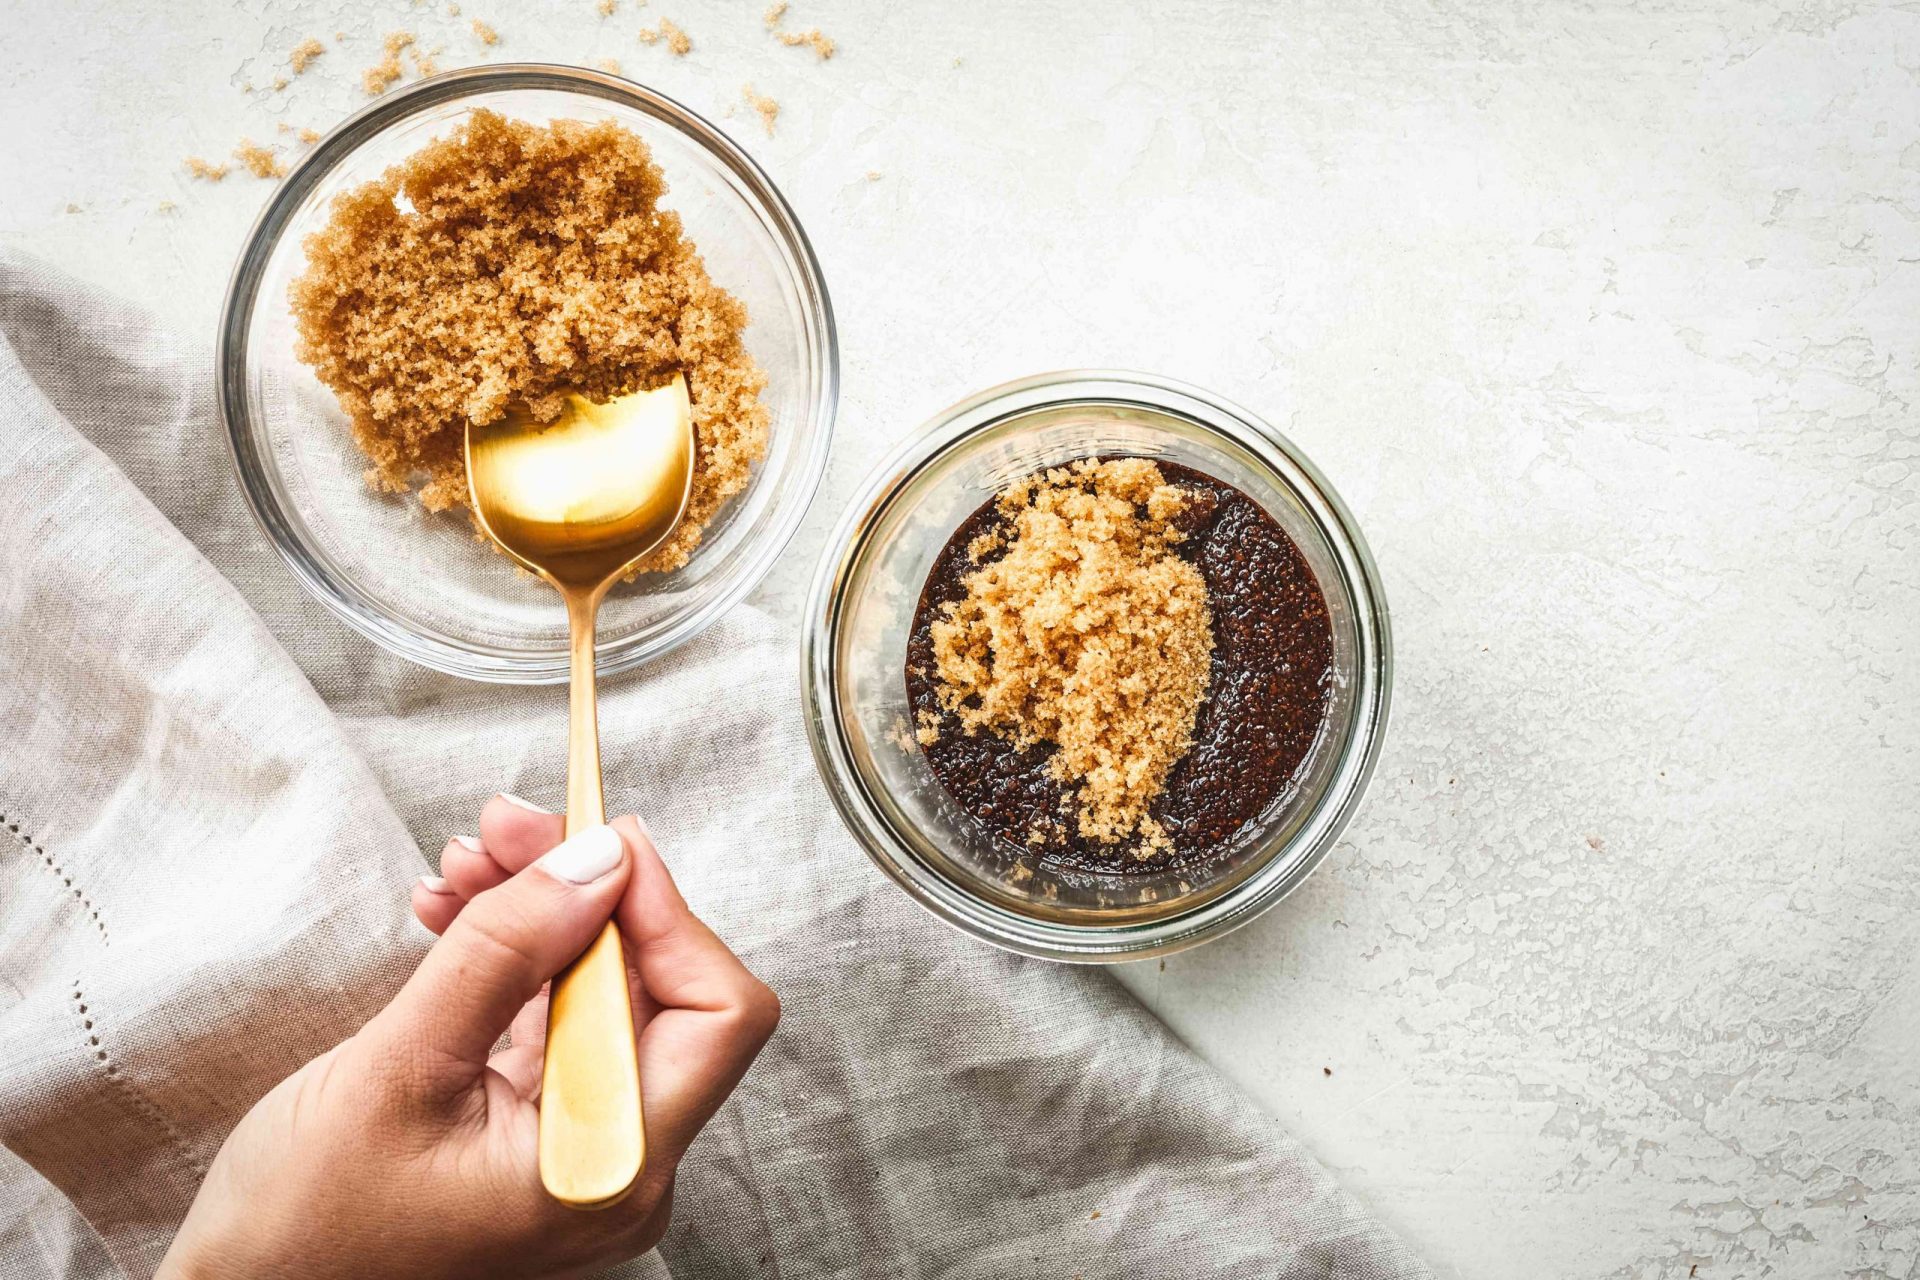 La cuchara dorada saca el azúcar moreno del bol de cristal y lo añade a la mezcla de café y aceite de coco